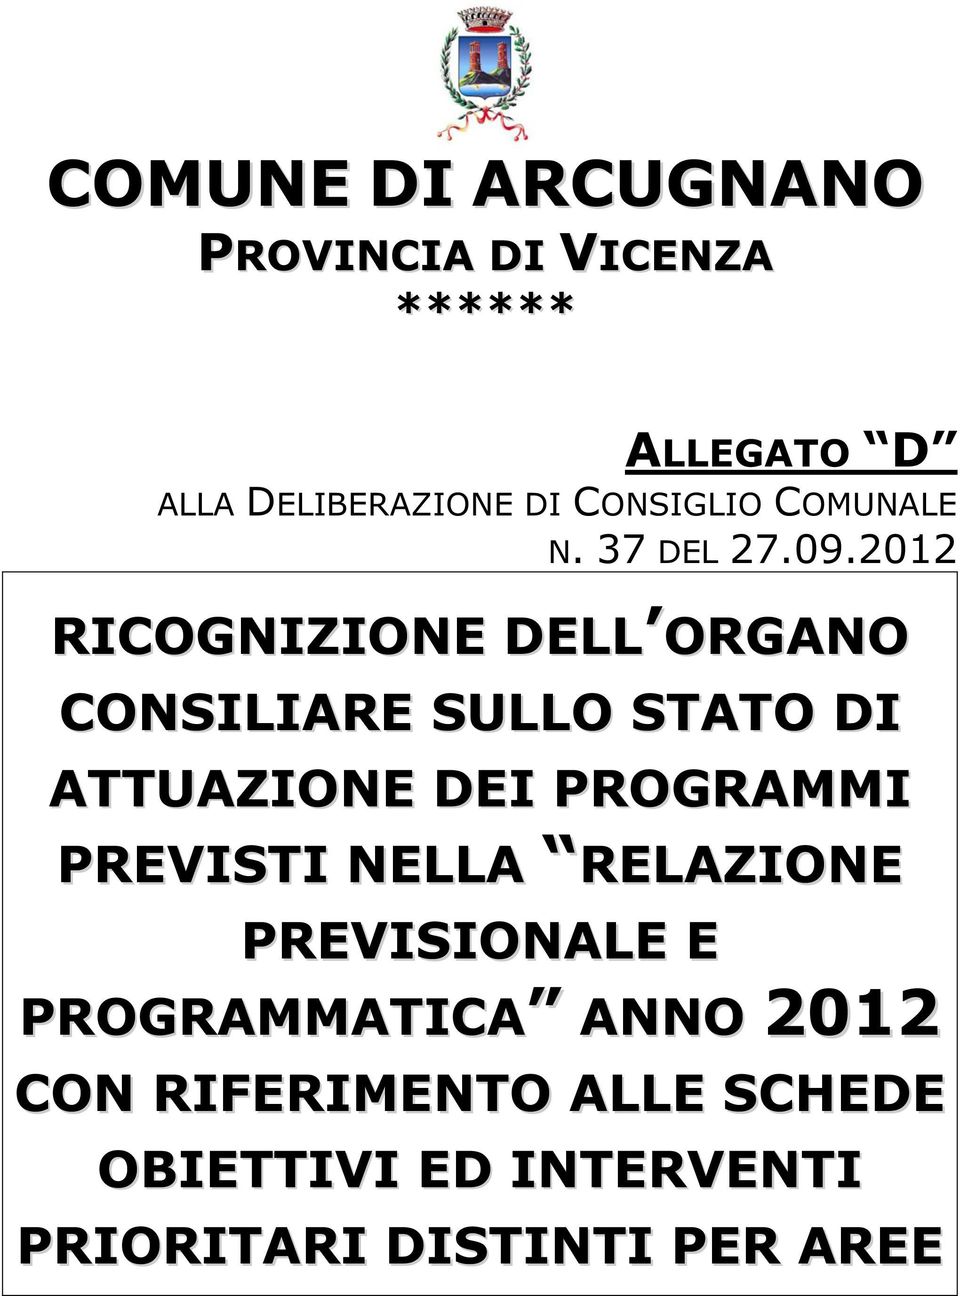 2012 RICOGNIZIONE DELL ORGANO CONSILIARE SULLO STATO DI ATTUAZIONE DEI PROGRAMMI